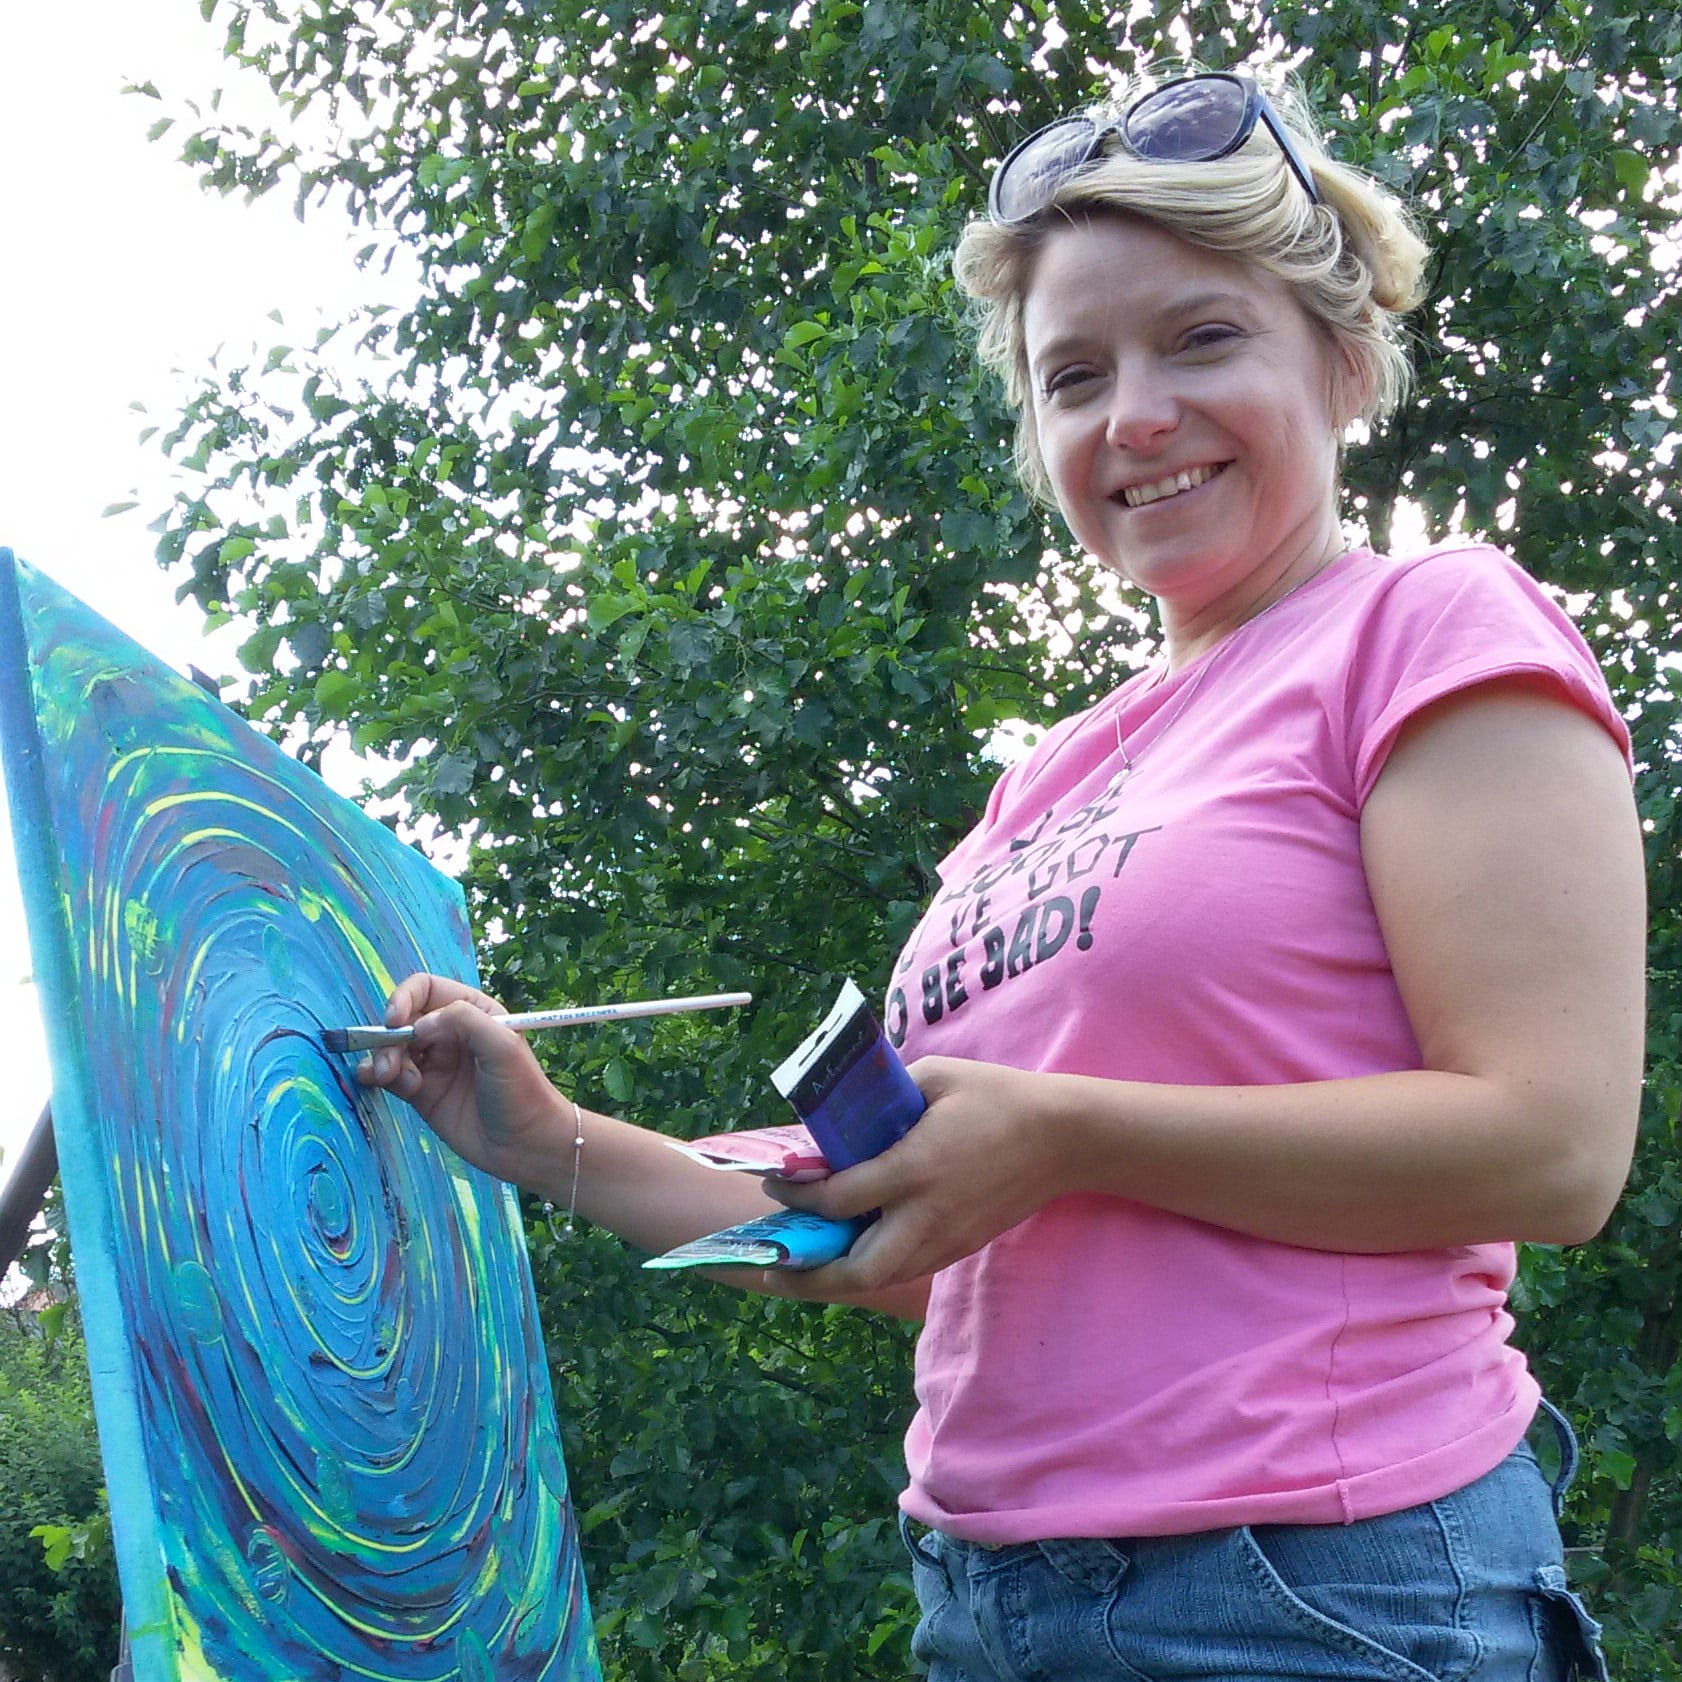 Barbara Lech - kobiecy coach - z uśmiechem maluje intuicyjnie na warsztatach Vedic Art u Bożeny Bieleniewicz